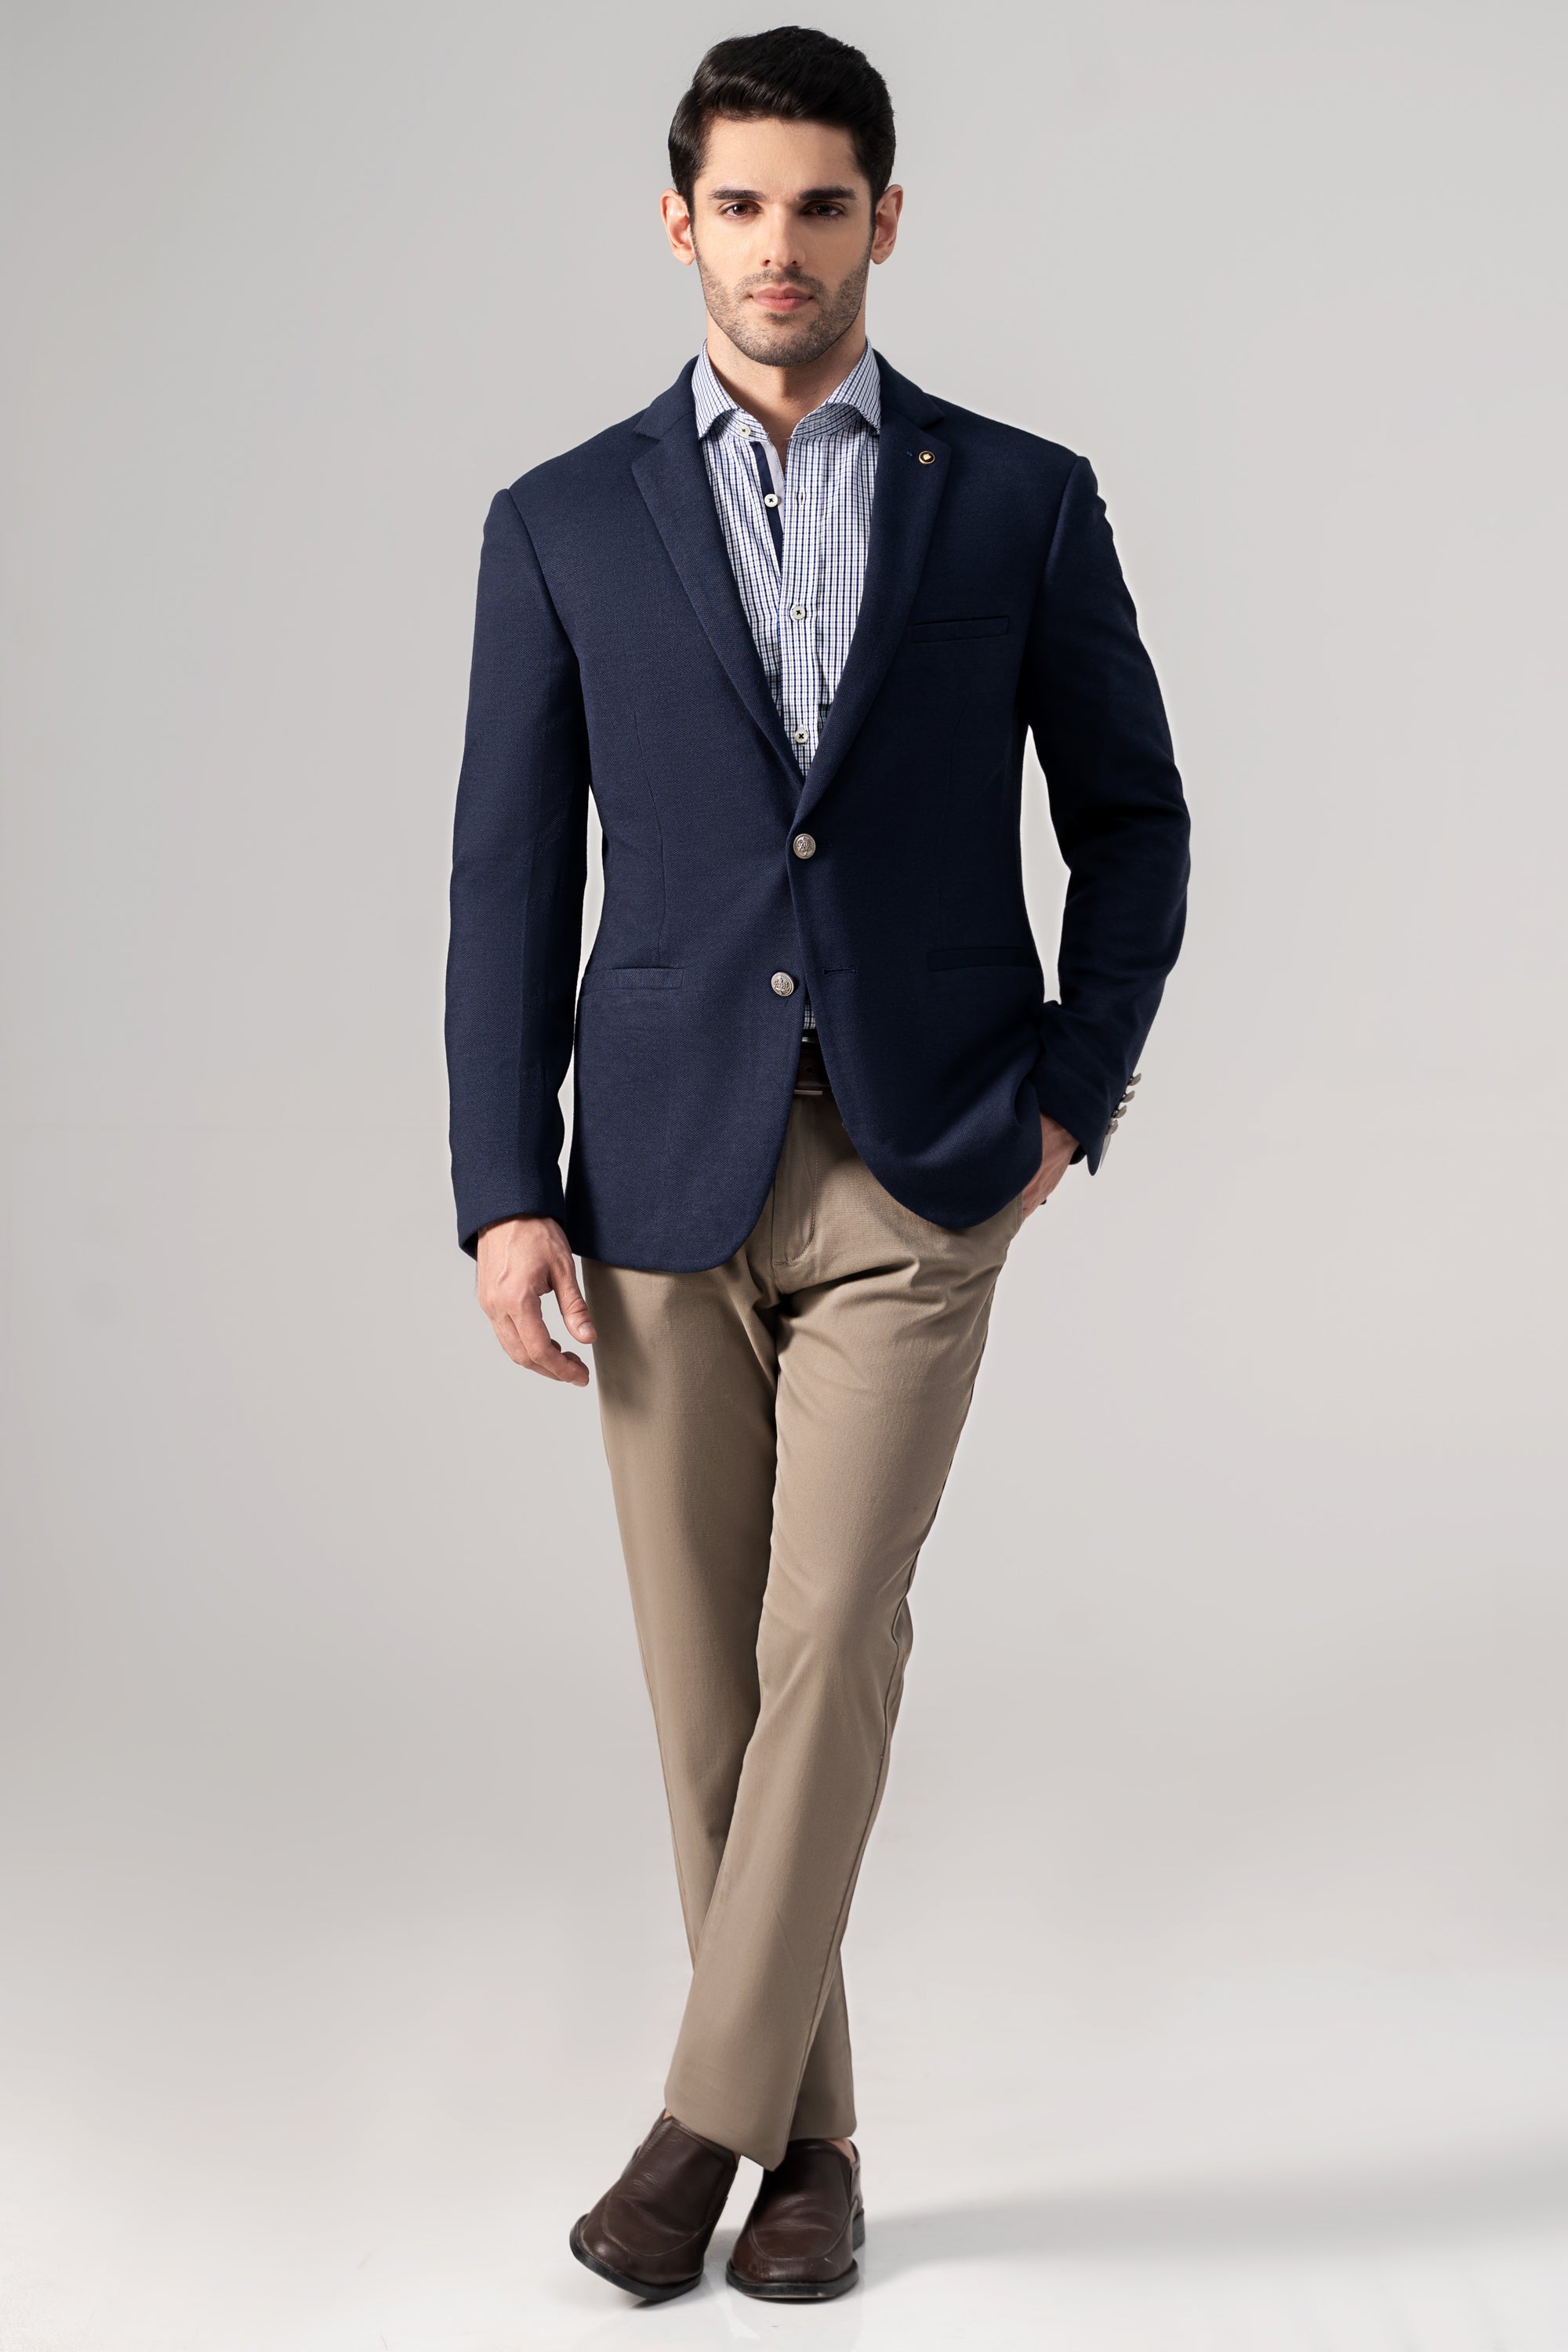 Blue Men'S Suit 2 Stitch Coat Pant, Size: 34 36 38 40 42 44 at Rs  2499/piece in Gurgaon